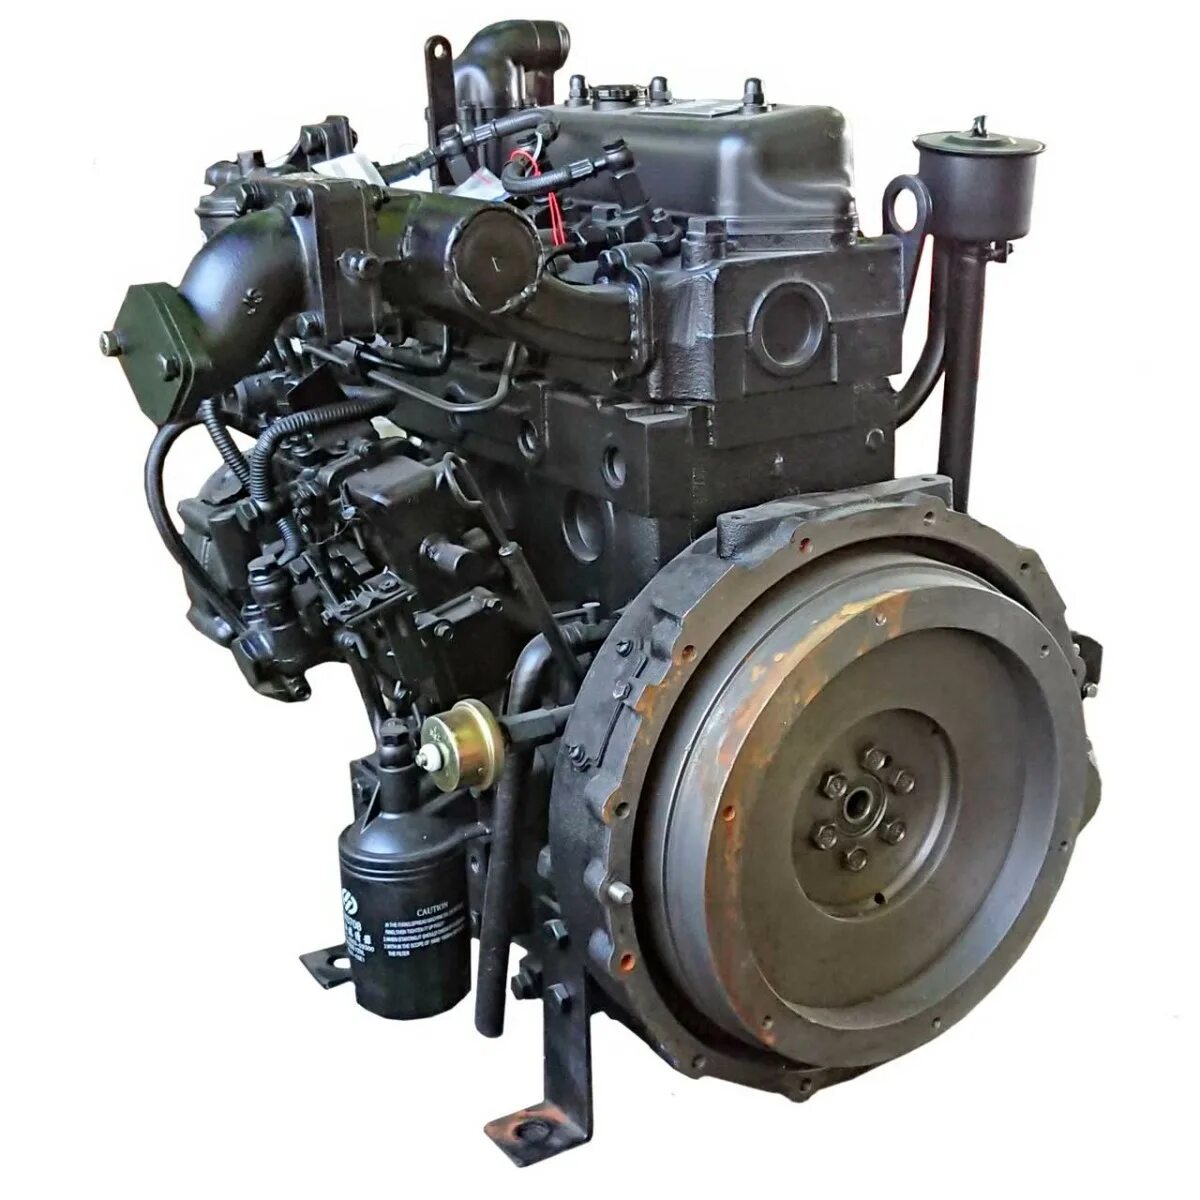 Дизельный двигатель Yangdong yd490d. Двигатель Yangdong yd4ezld. Дизельный двигатель Yangdong yd385d запчасти. Двигатель дизельный r195ndl (15л.с.). Купить дизельный двигатель 1